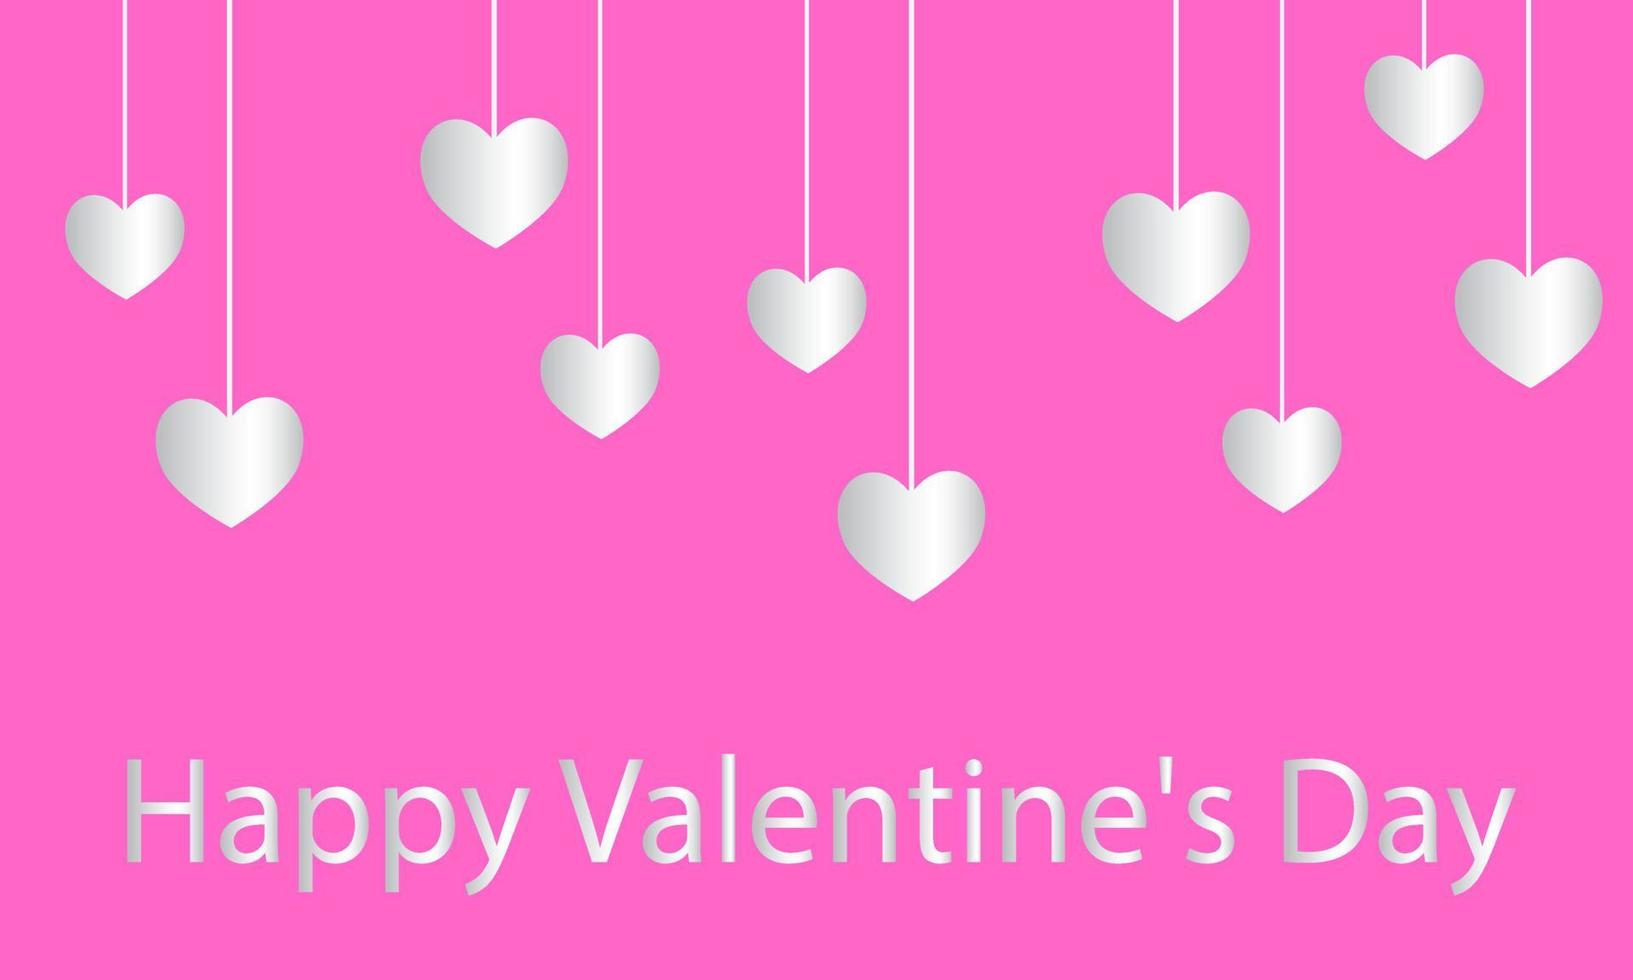 sospeso cuore sagomato elementi su rosa sfondo. amore vettore simbolo per contento Da donna, madre, San Valentino giorno, compleanno saluto carta design. eps10